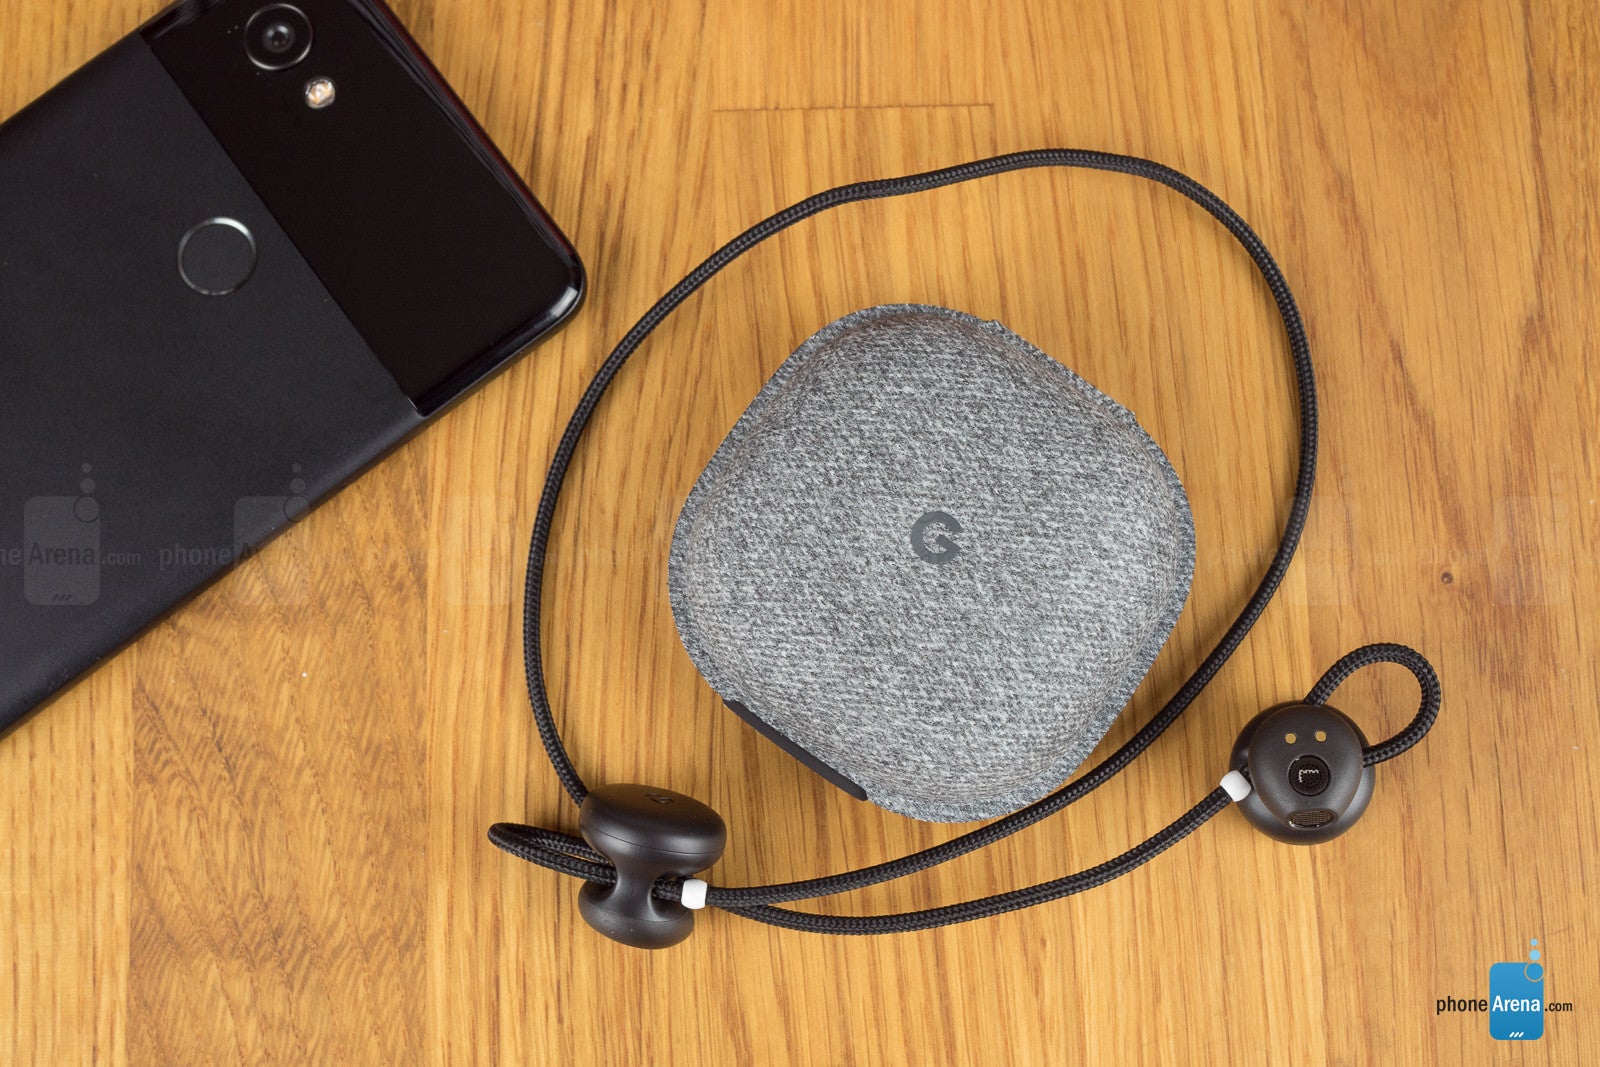 Google Pixel Buds earphones Review